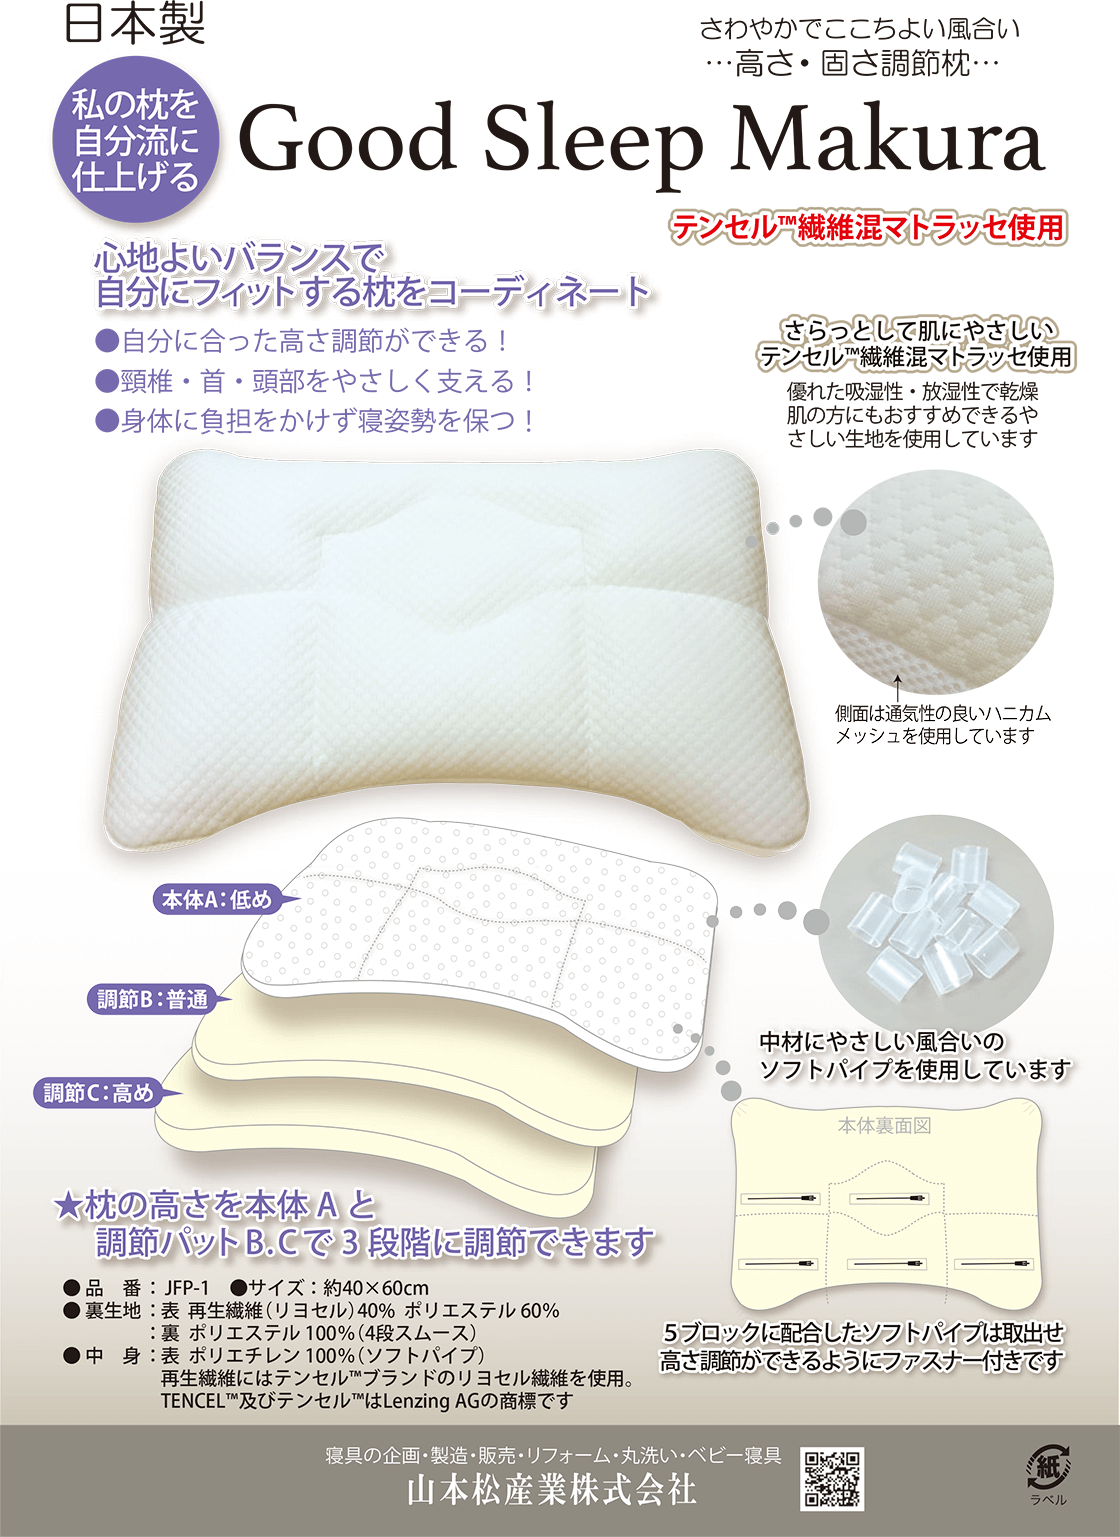 日本製 私の枕を自分流に仕上げる Good Sleep Makura